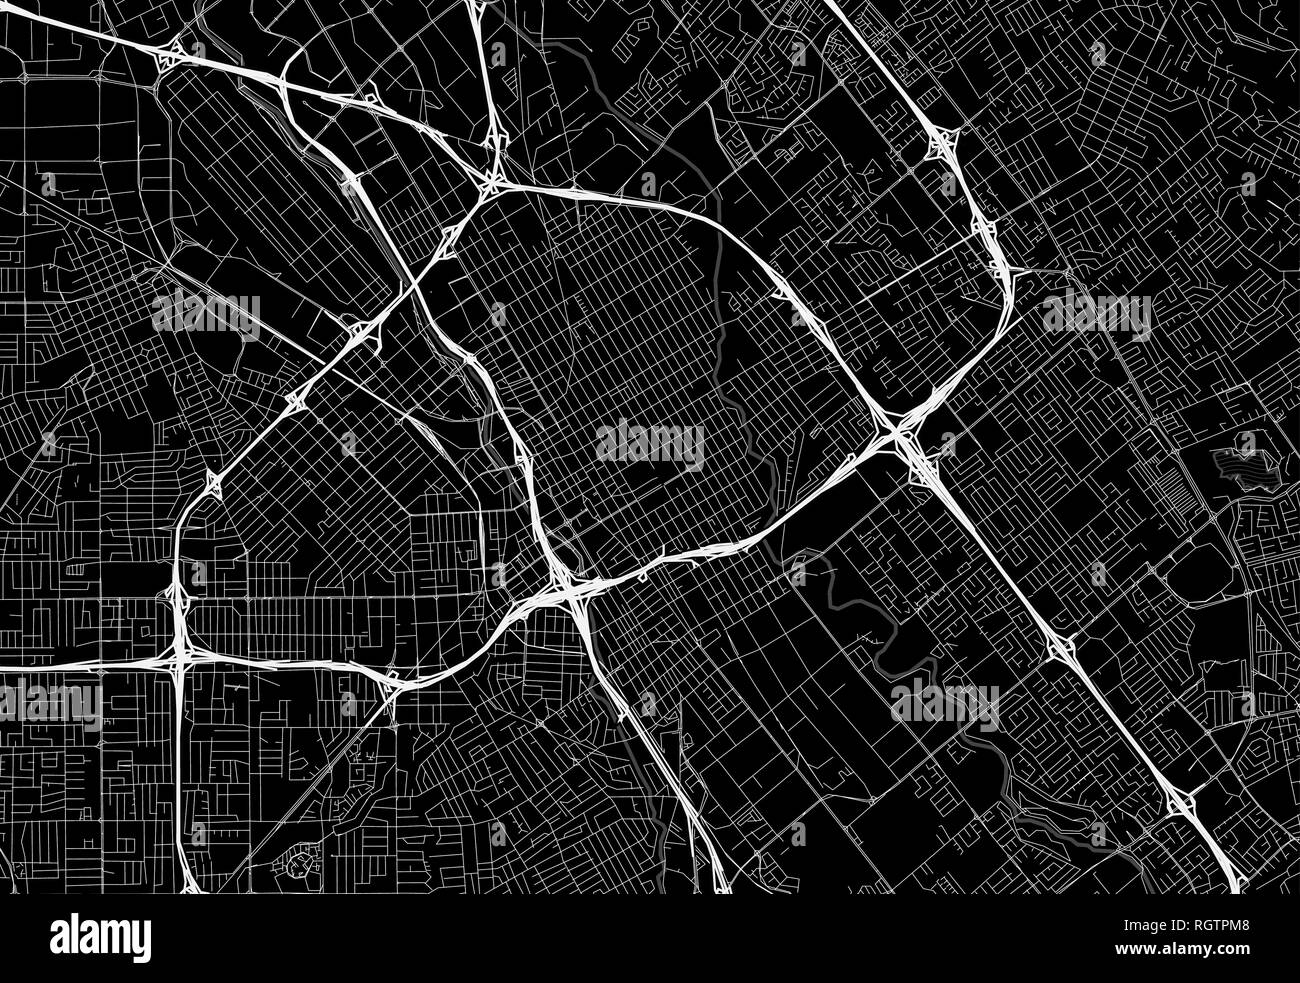 Schwarze Karte von Downtown San Jose, USA Dieser Vektor artmap als dekorativer Hintergrund oder eine einmalige Reise Zeichen erstellt wird. Stock Vektor